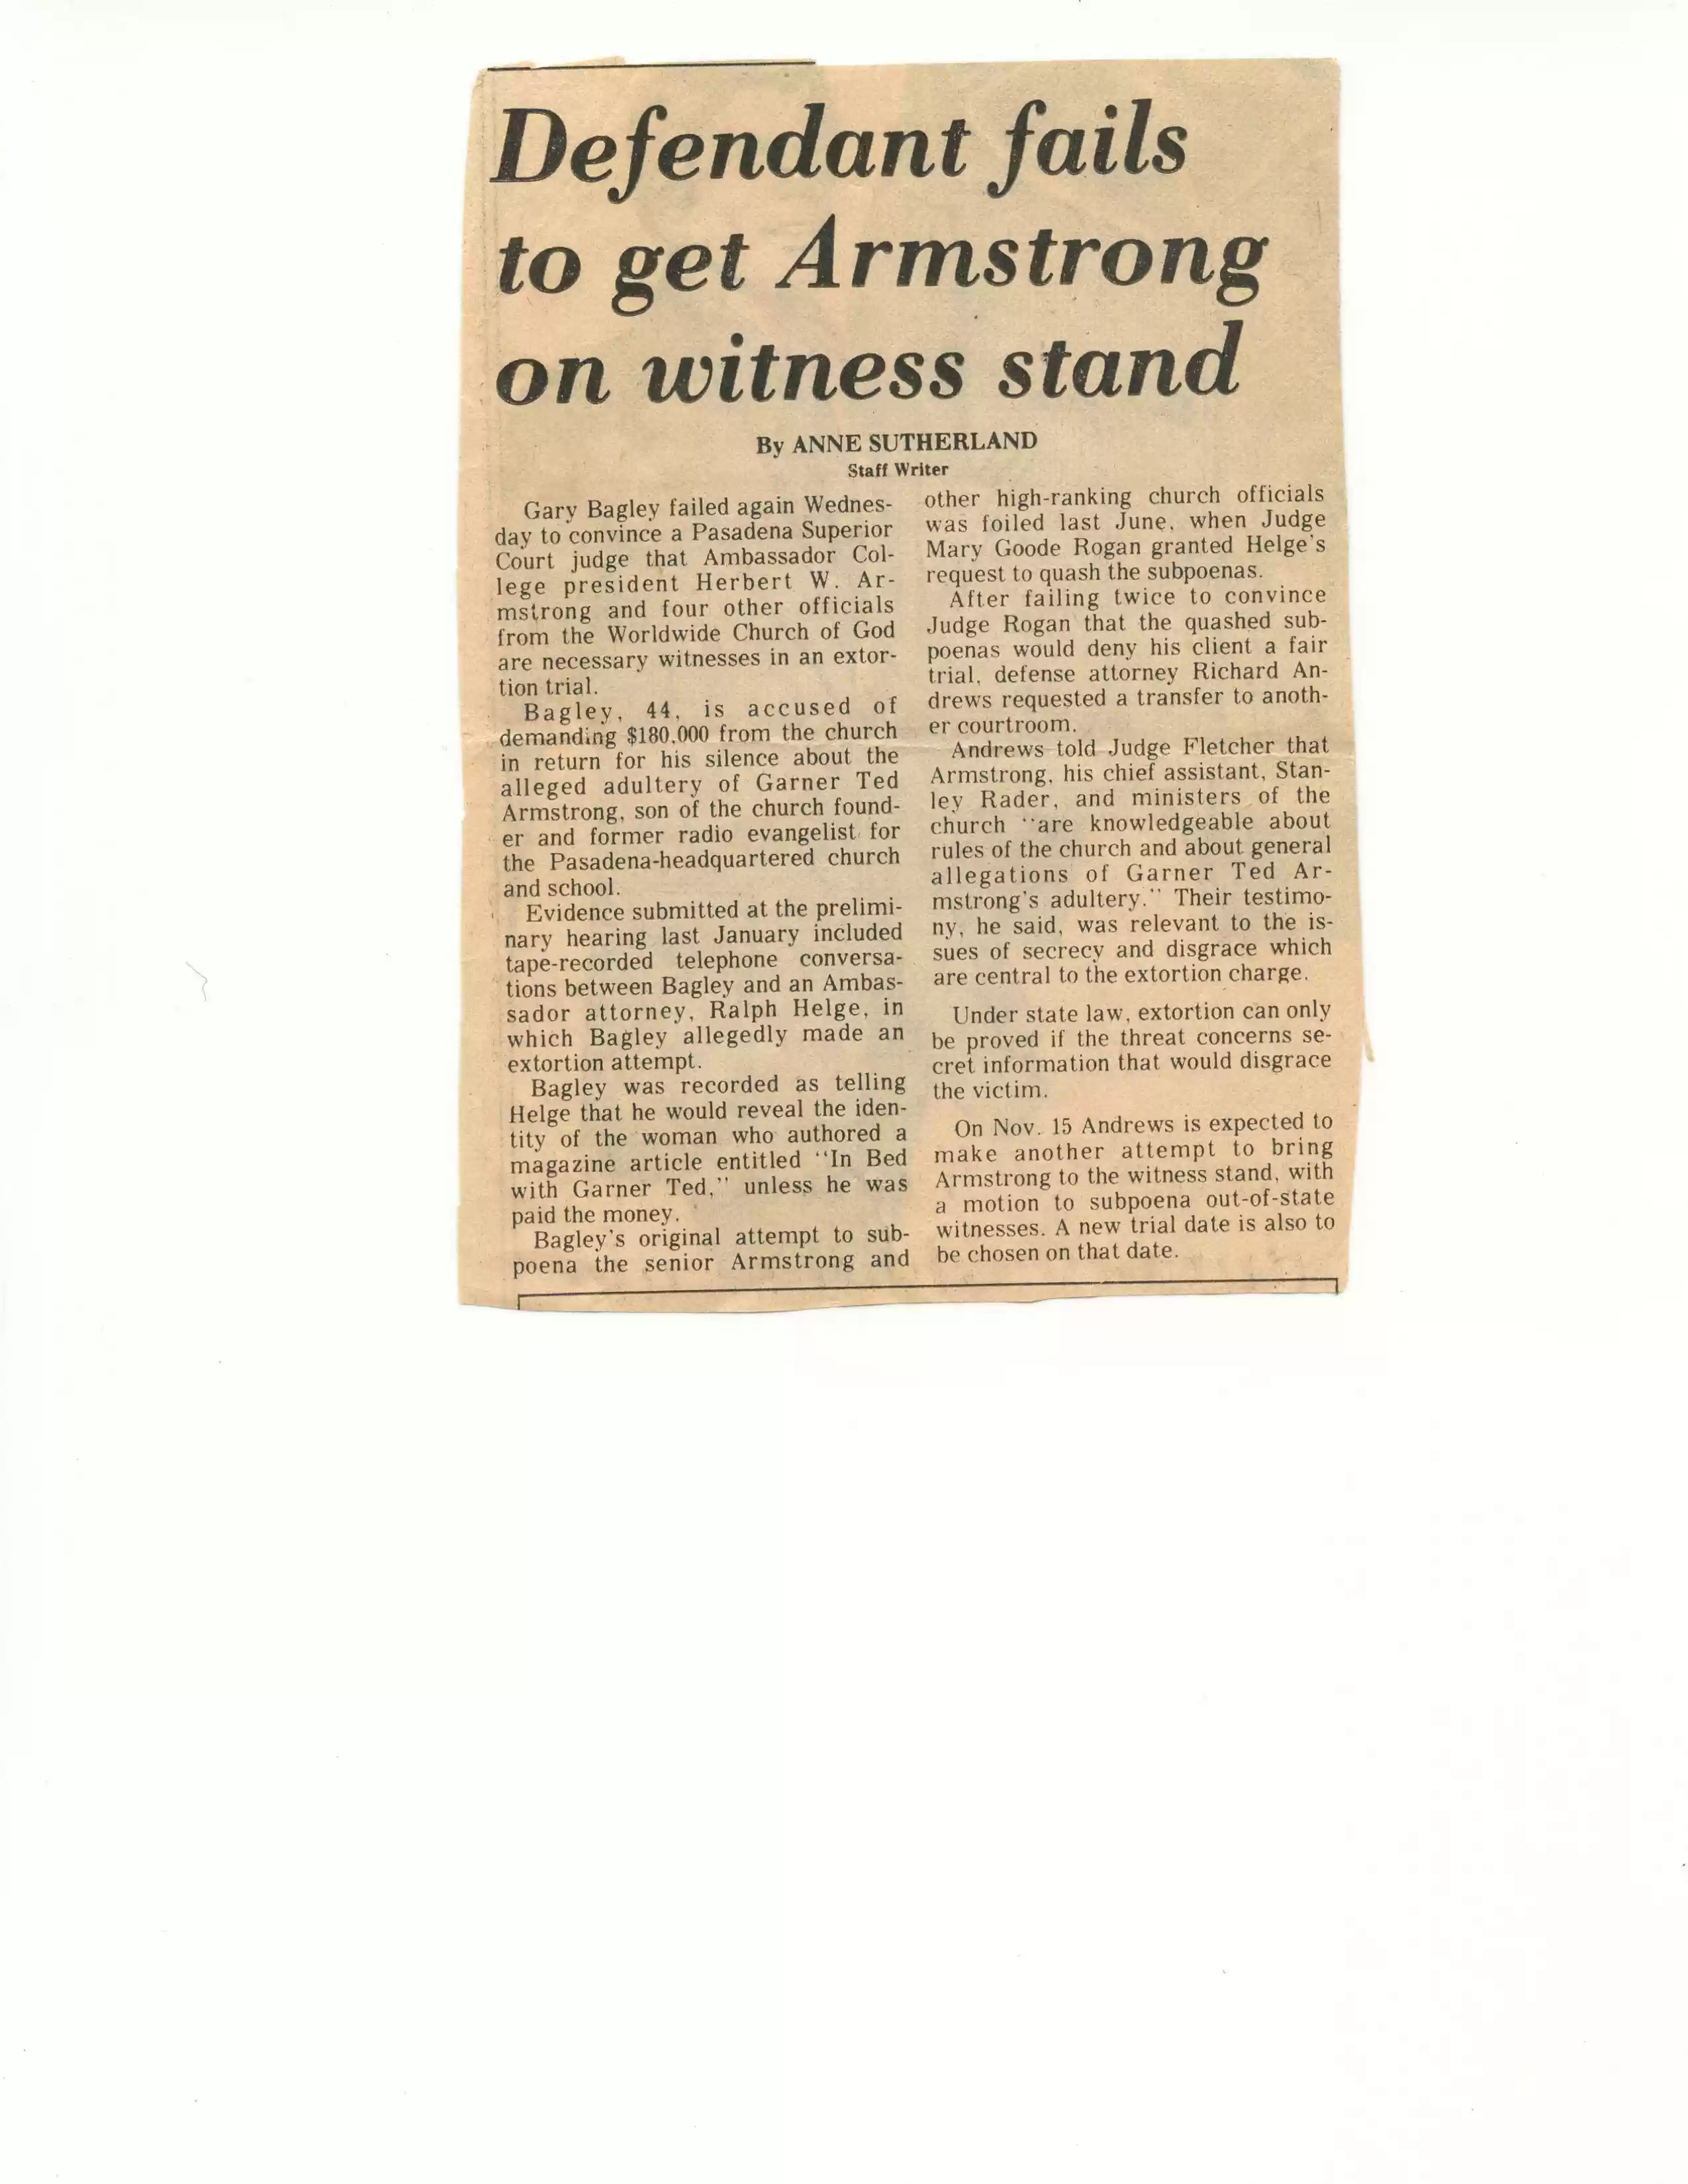 Pasadena Star News, n.d., but poss 1978or79